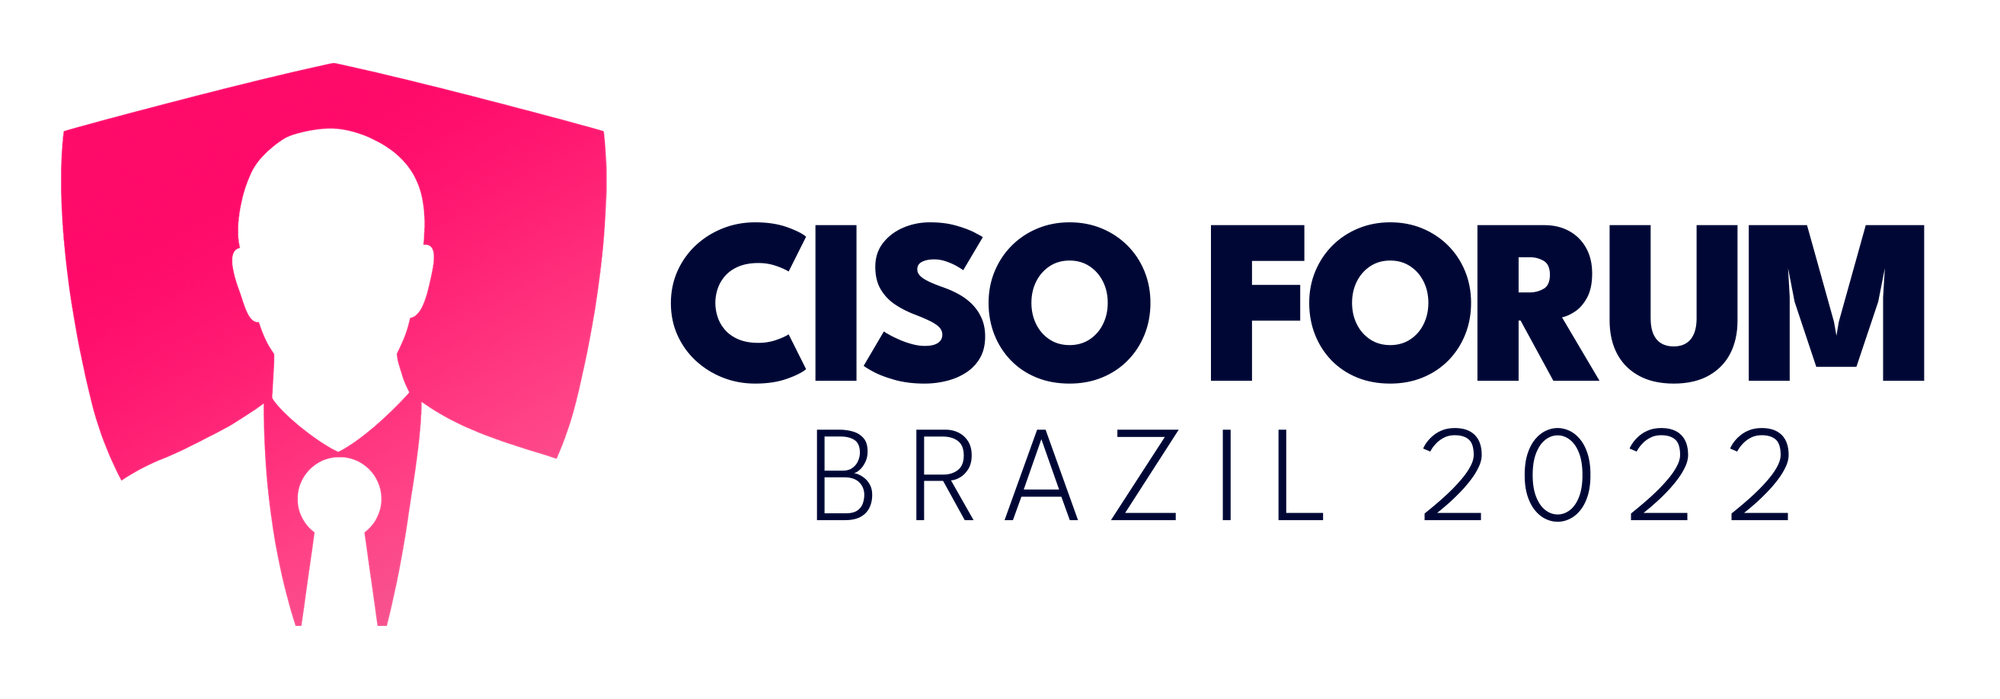 CISO Forum Brazil 2022 confirma presença de expert em cibersegurança da NEO no painel sobre retenção de talentos